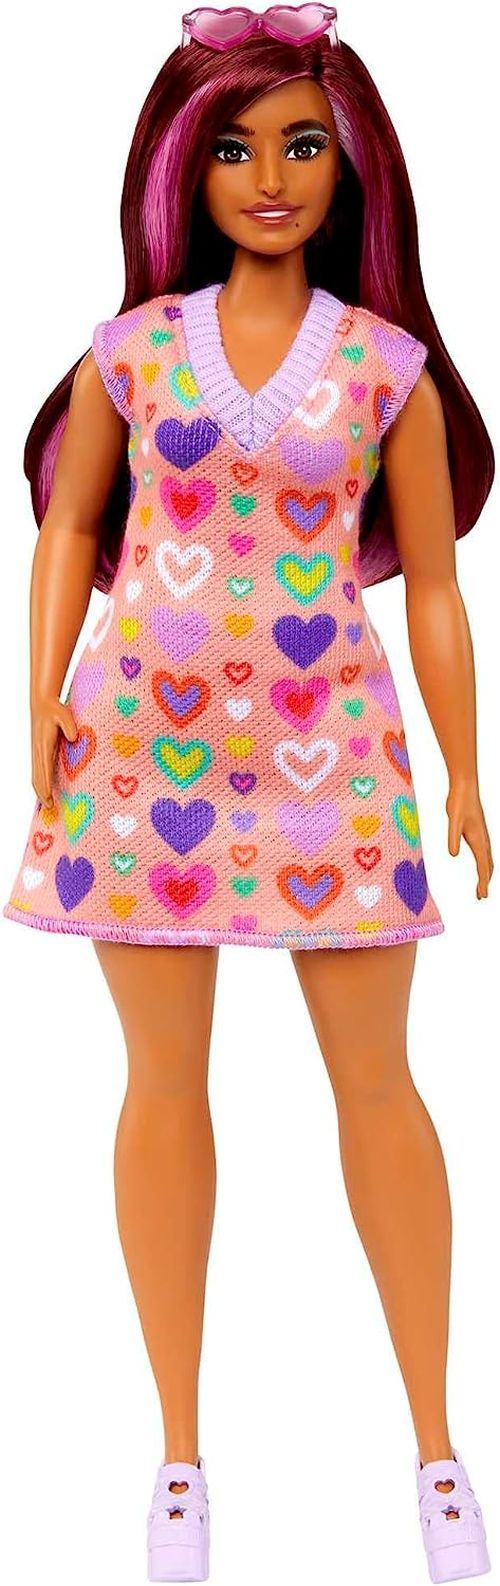 MATTEL Barbie In A Heart Colored Dress - DOLLS